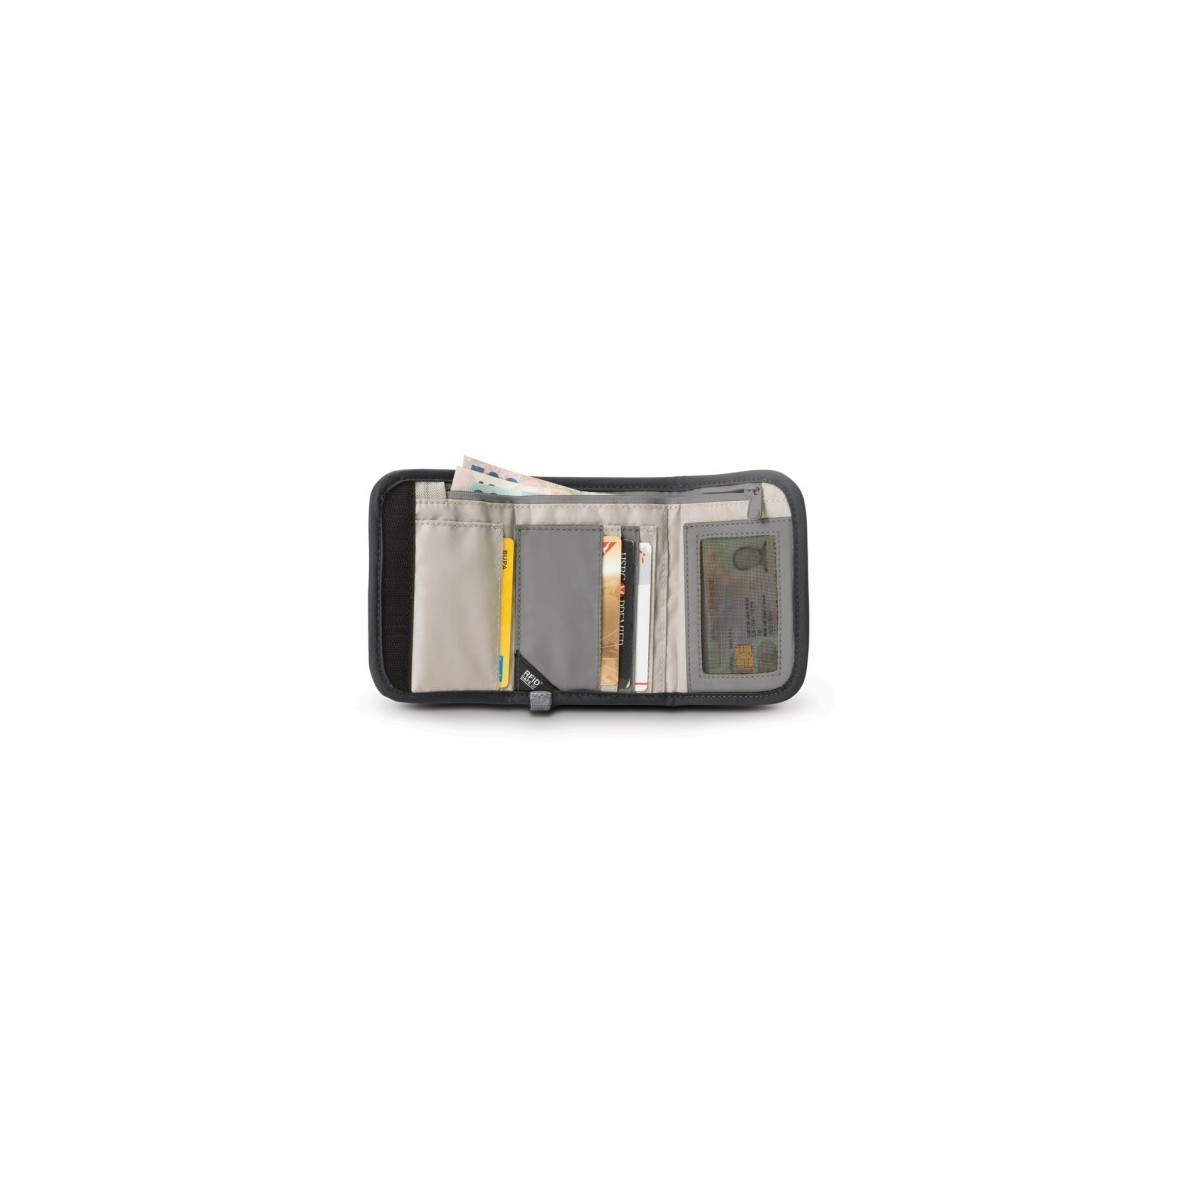 กระเป๋าสำหรับใส่บัตร-เงิน RFIDsafe™ V125 (Black) RFID blocking tri-fold wallet